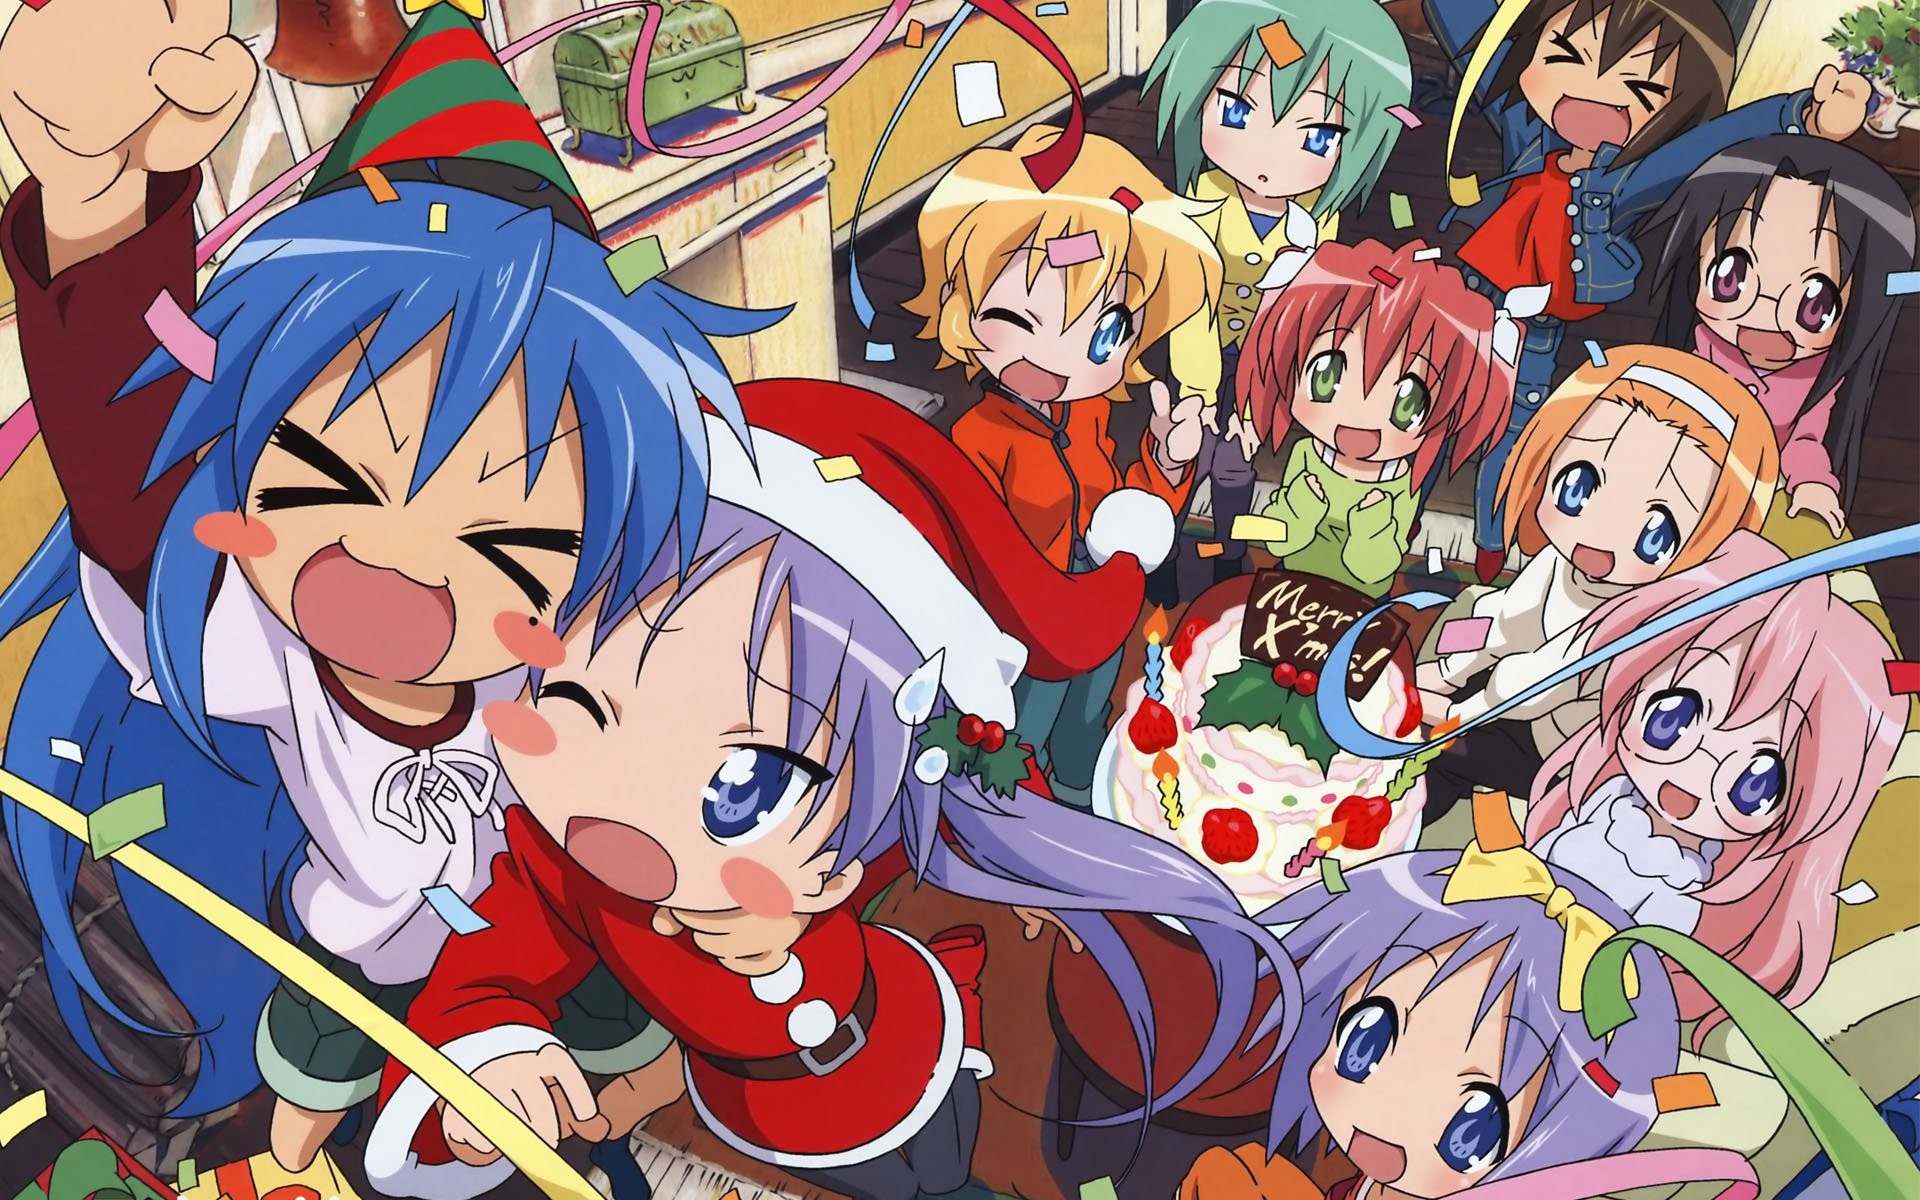 1920x1200 Anime Christmas wallpaper | Anime Christmas | Pinterest | Christmas  wallpaper, Anime and Wallpaper